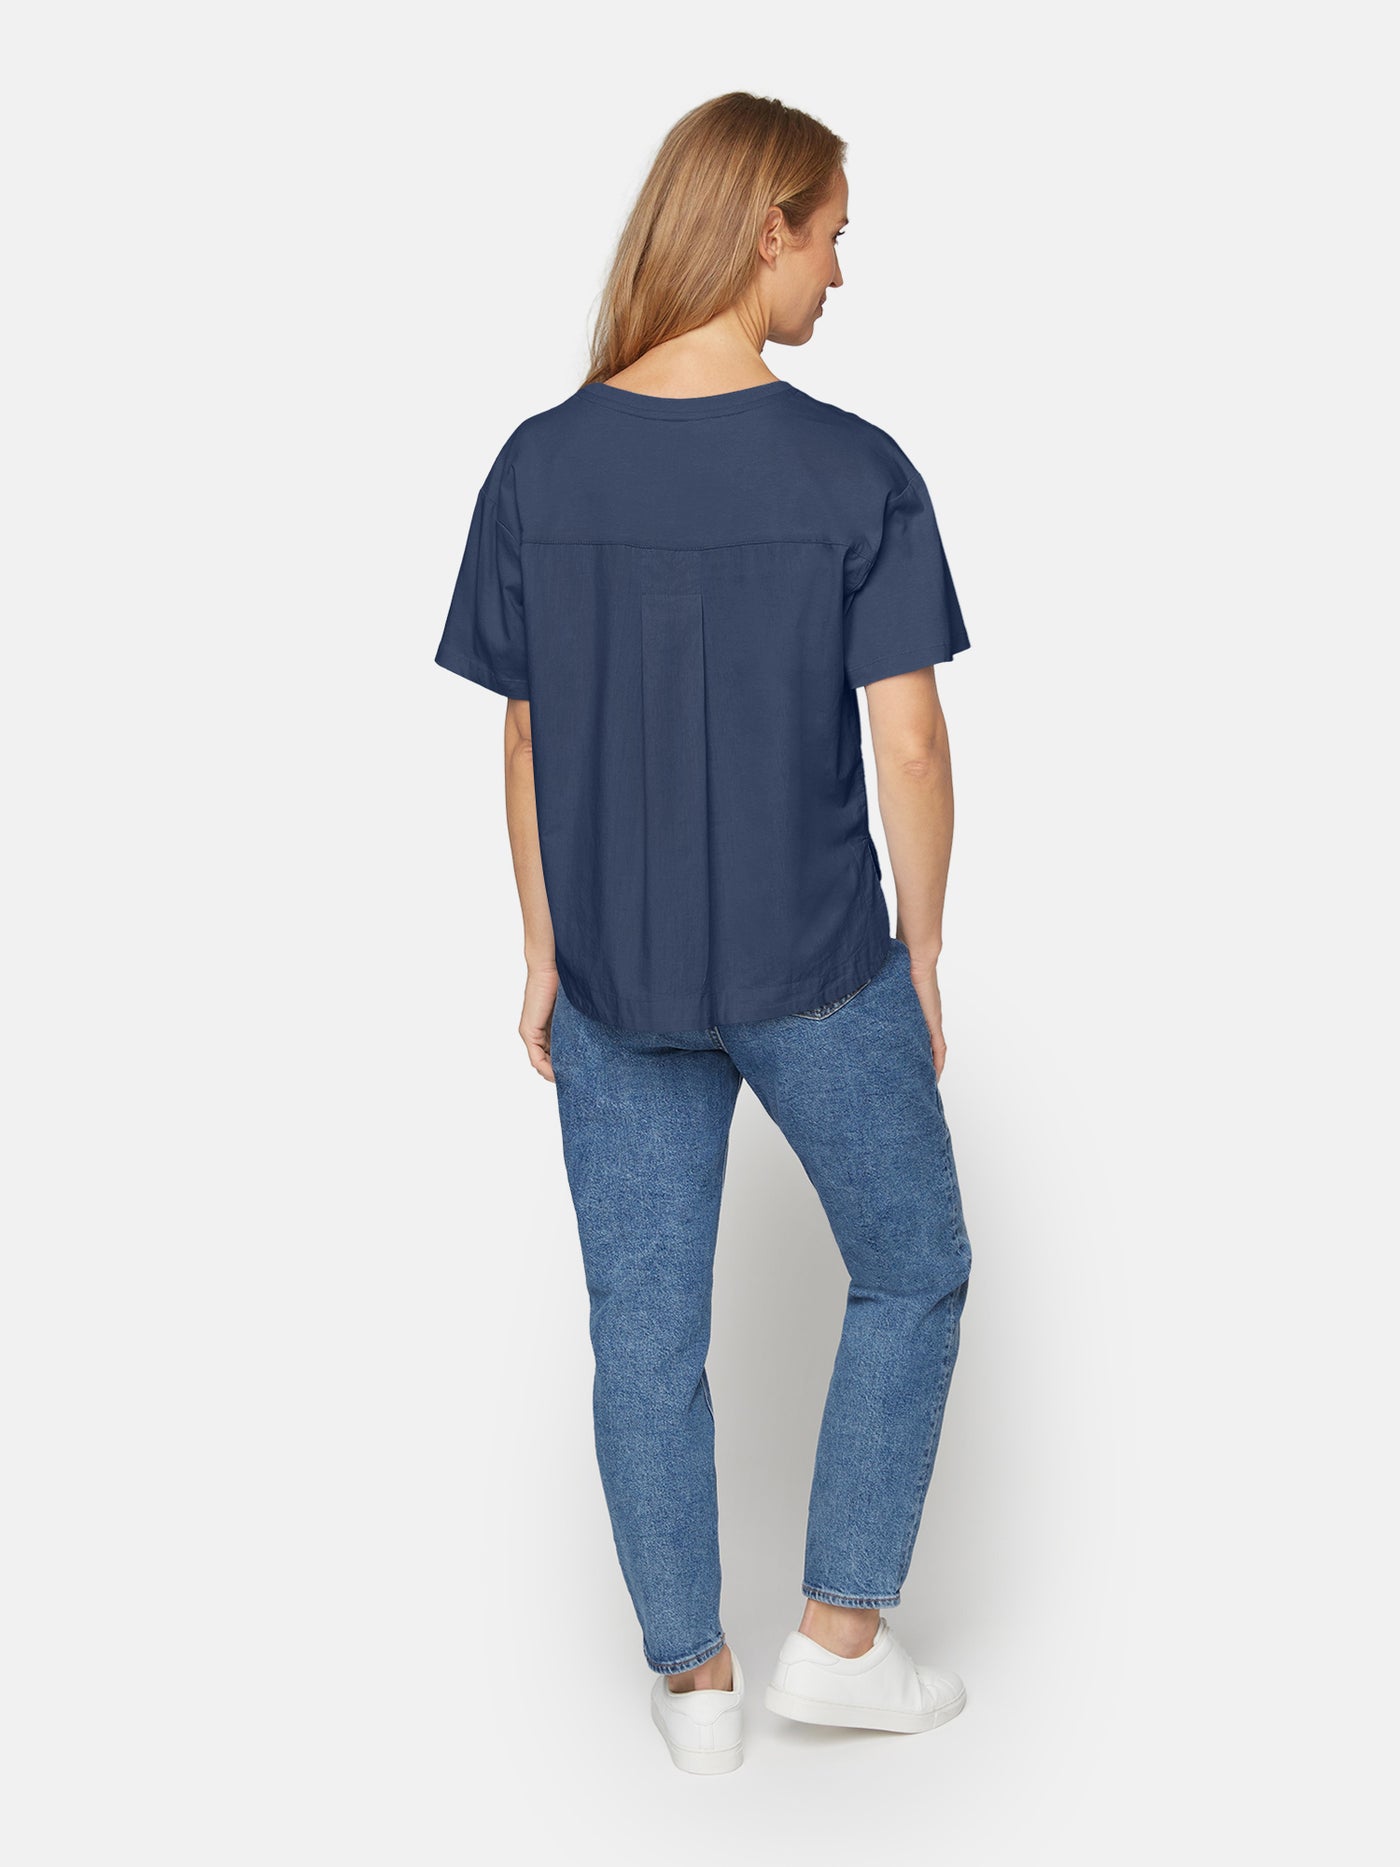 T-shirt - Oceana Blue